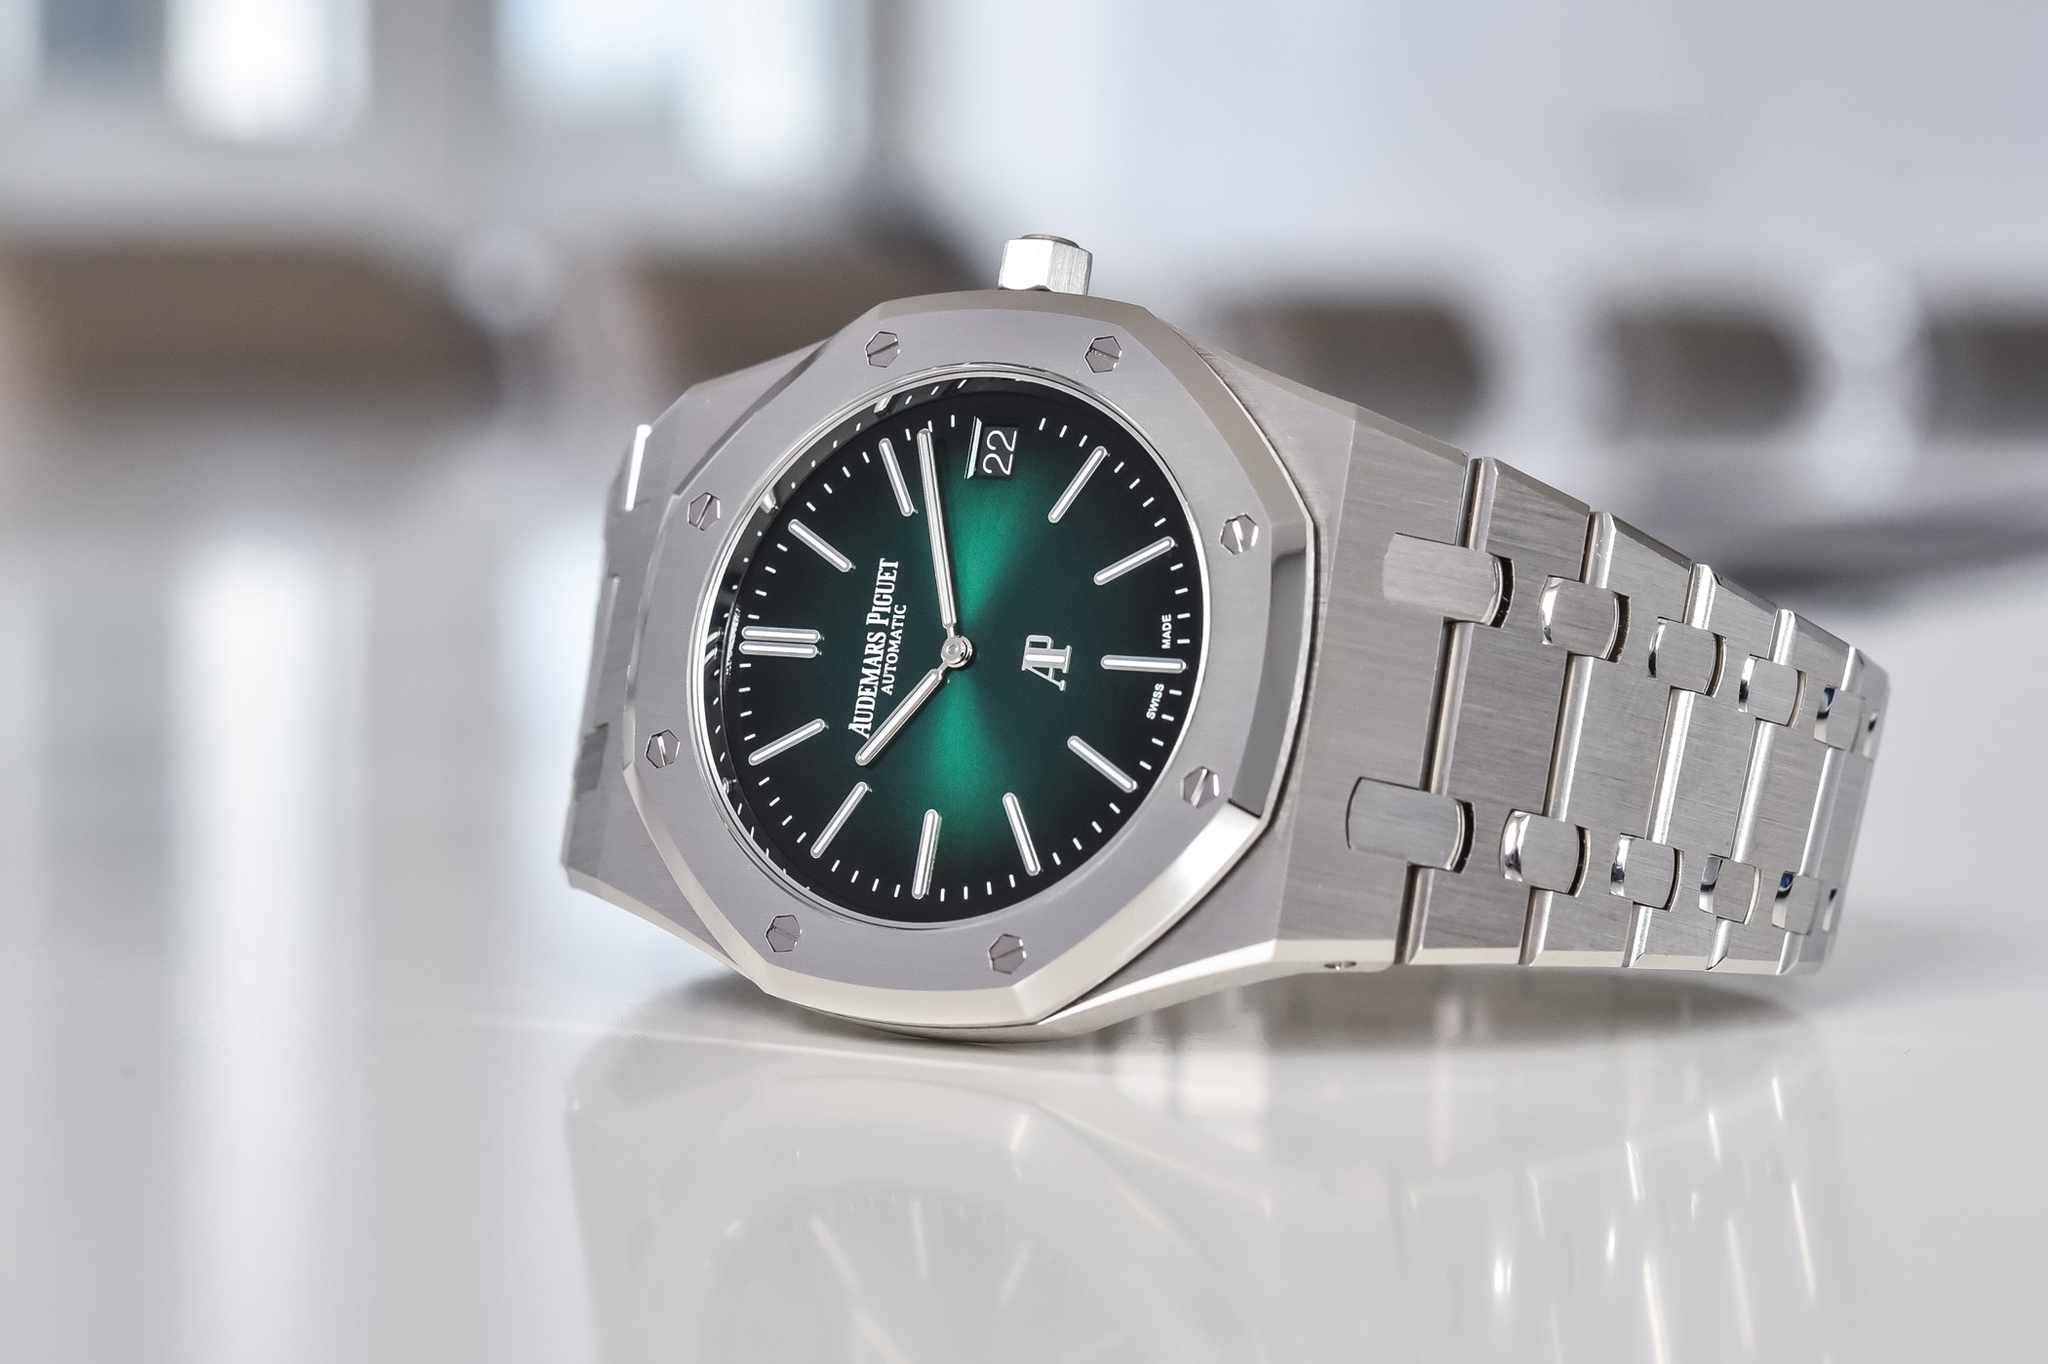 Đồng hồ Audemars Piguet Royal Oak “Jumbo” Extra-Thin Platinum và mặt số màu xanh khói